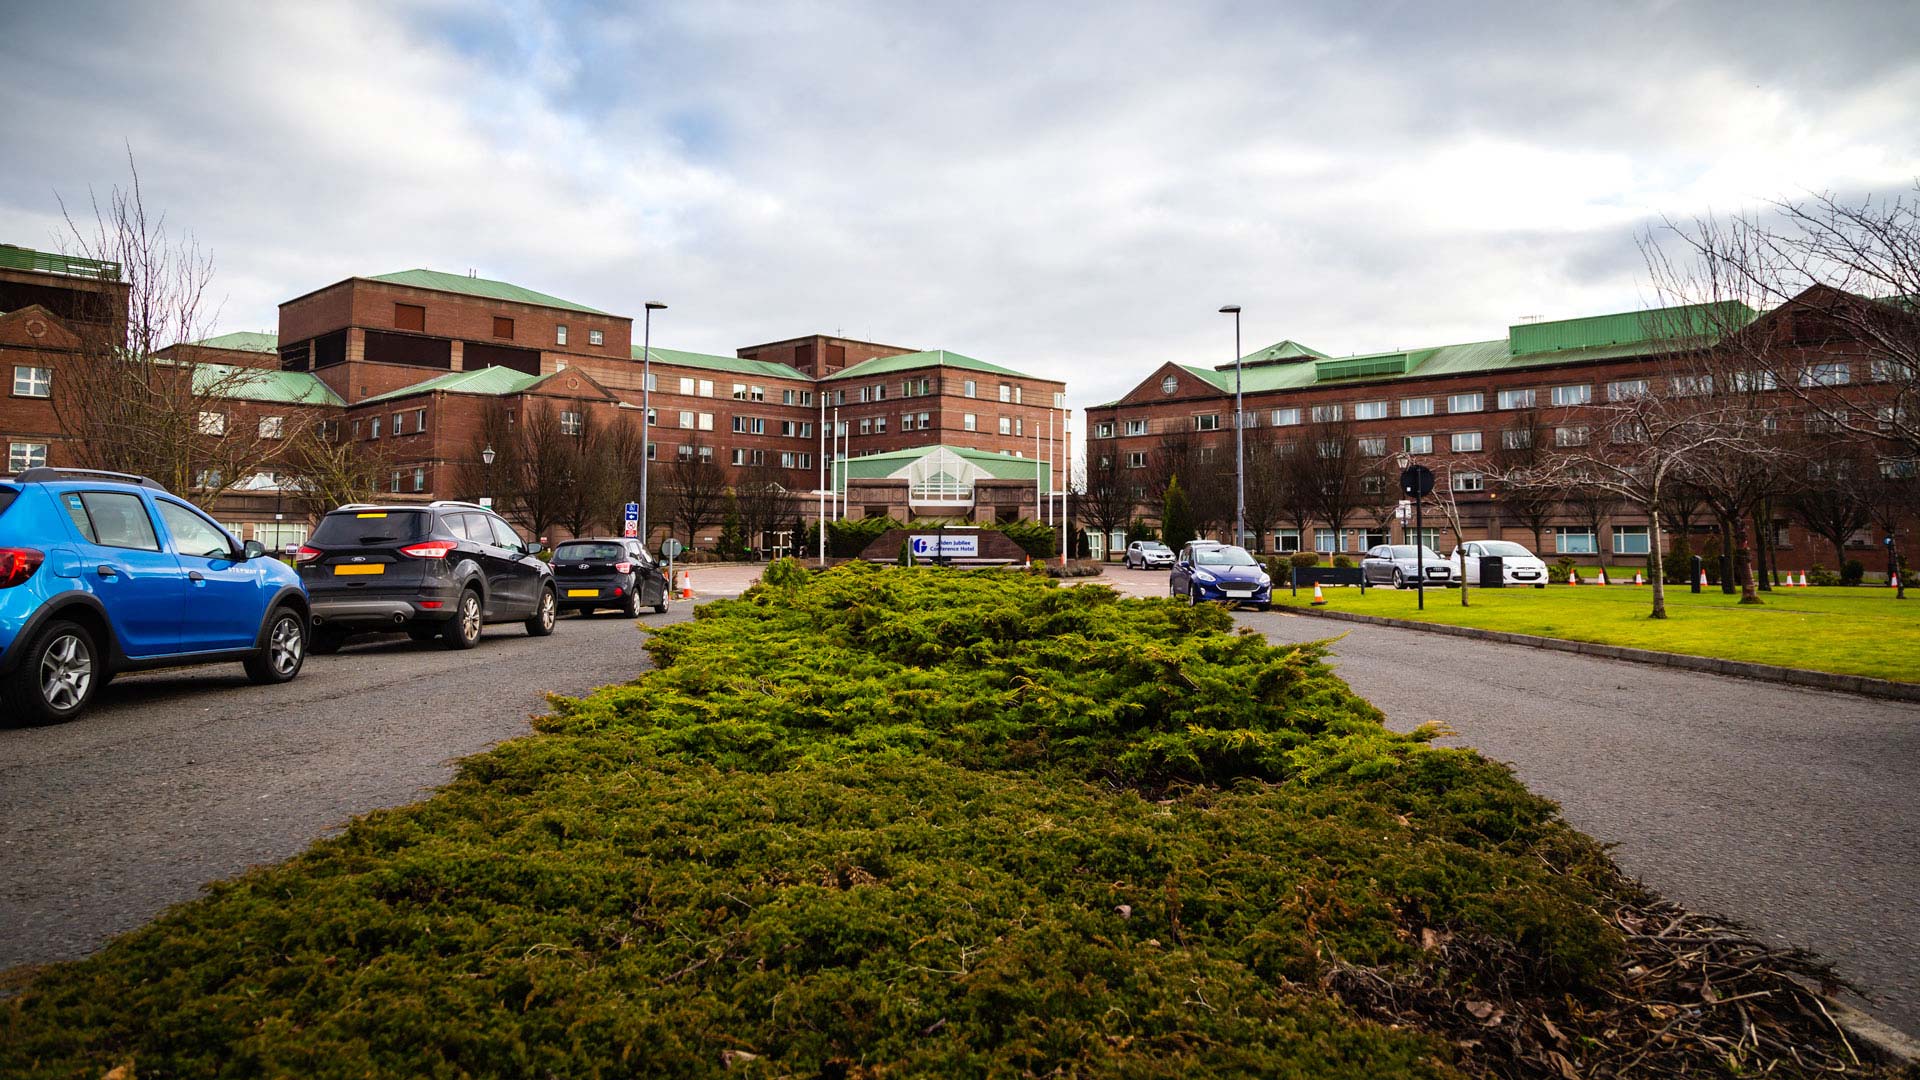 Golden Jubilee Hospital , Clydeside Glasgow